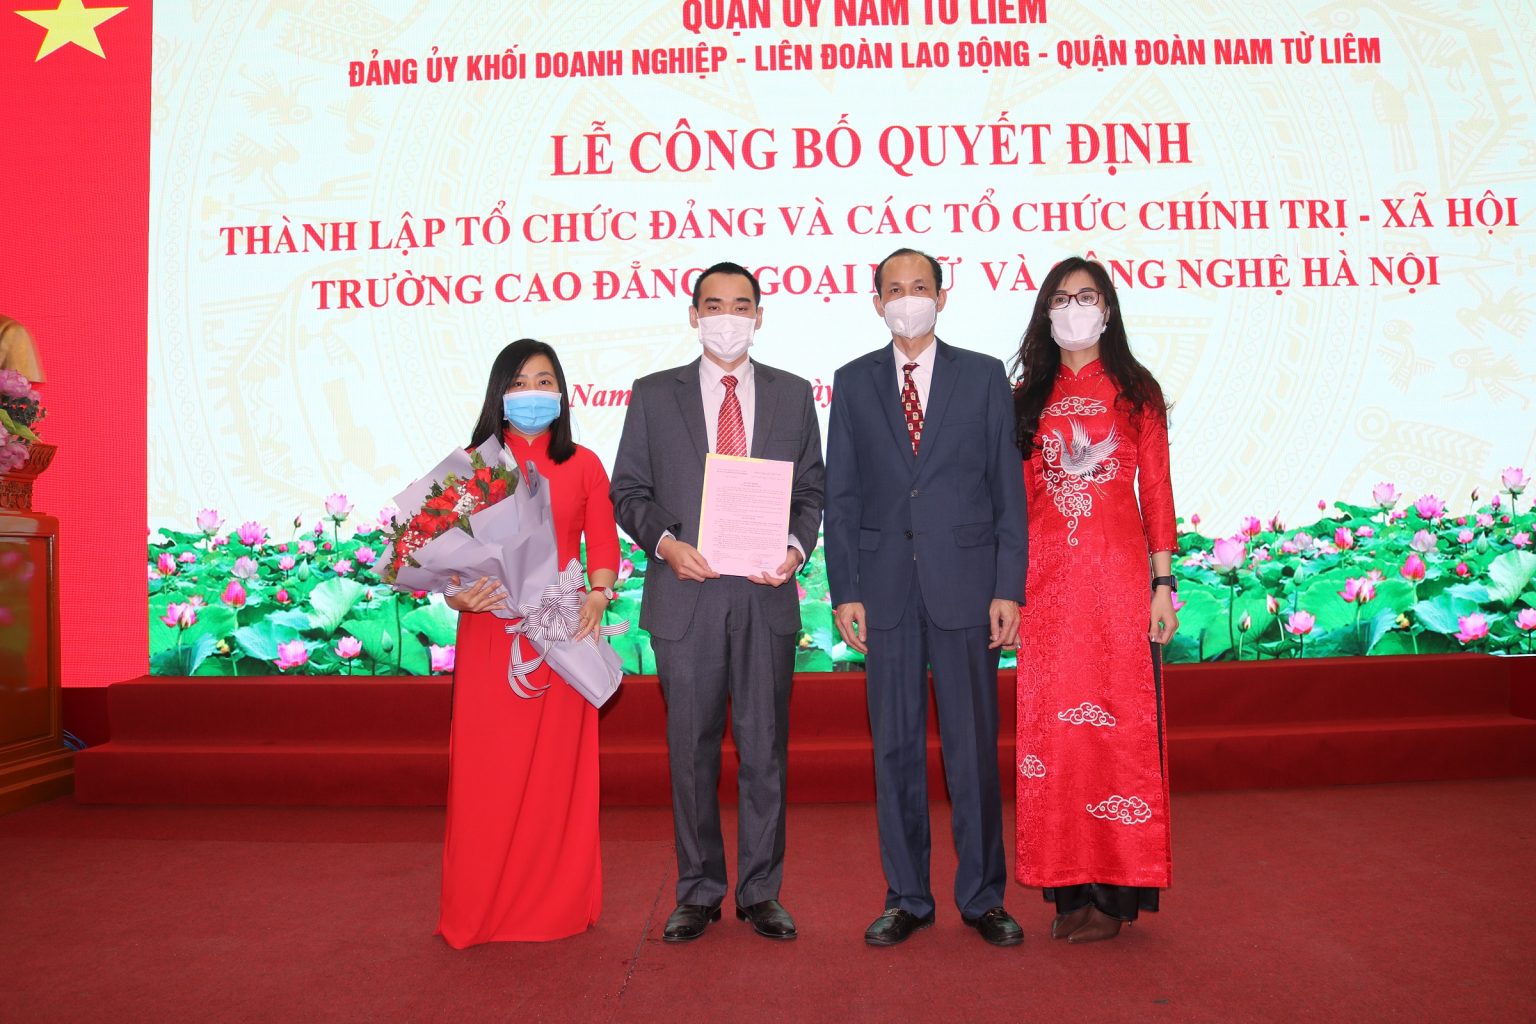 Đồng chí Phạm Quang Tuấn – Bí thư Đảng ủy Khối doanh nghiệp trao Quyết định thành lập Chi bộ